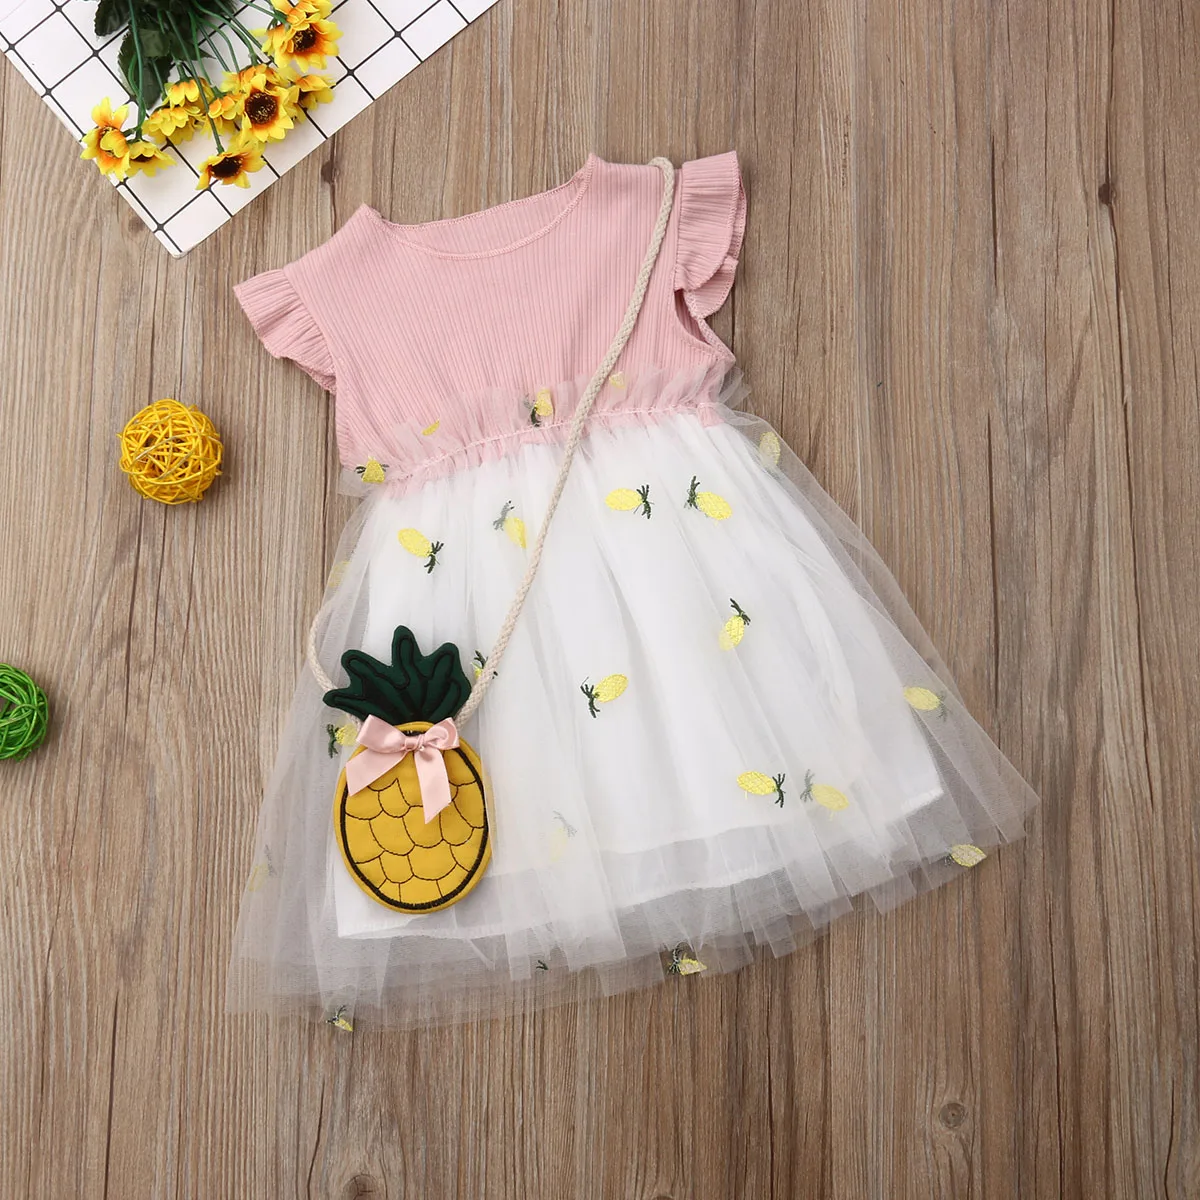 Летнее платье для маленьких девочек милое желтое Пышное кружевное фатиновое платье принцессы с фруктами, вечерние платья подружки невесты бальное платье